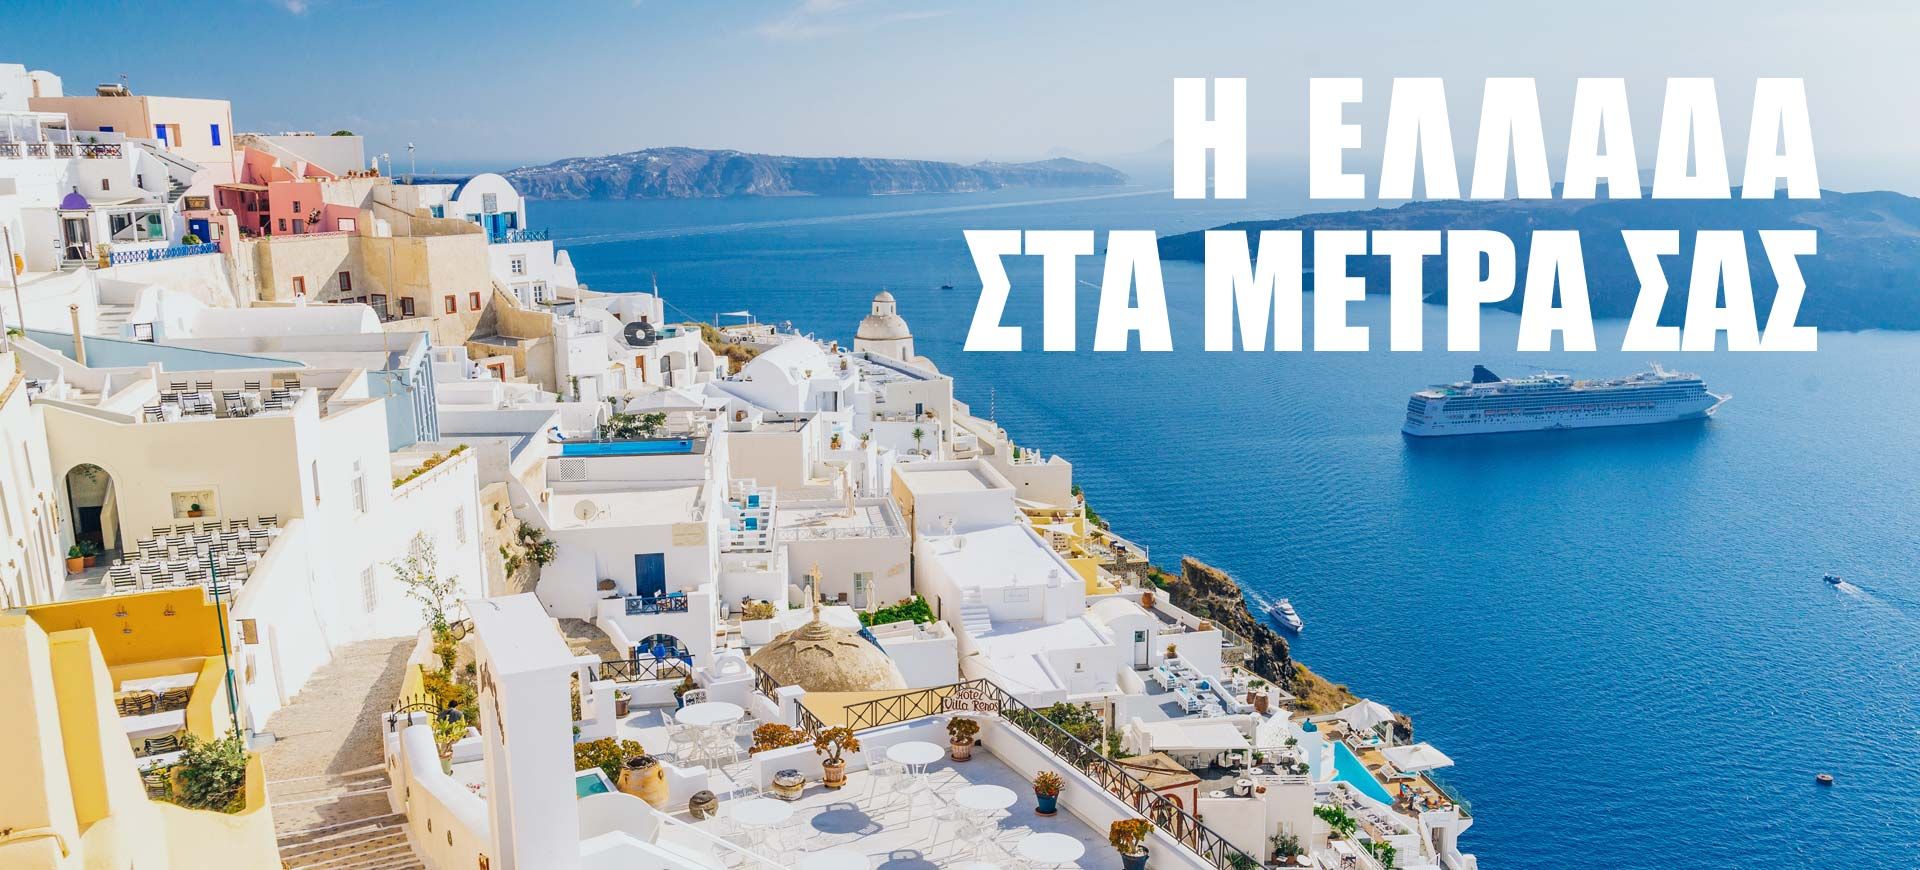 Η Ελλάδα στα μέτρα σας